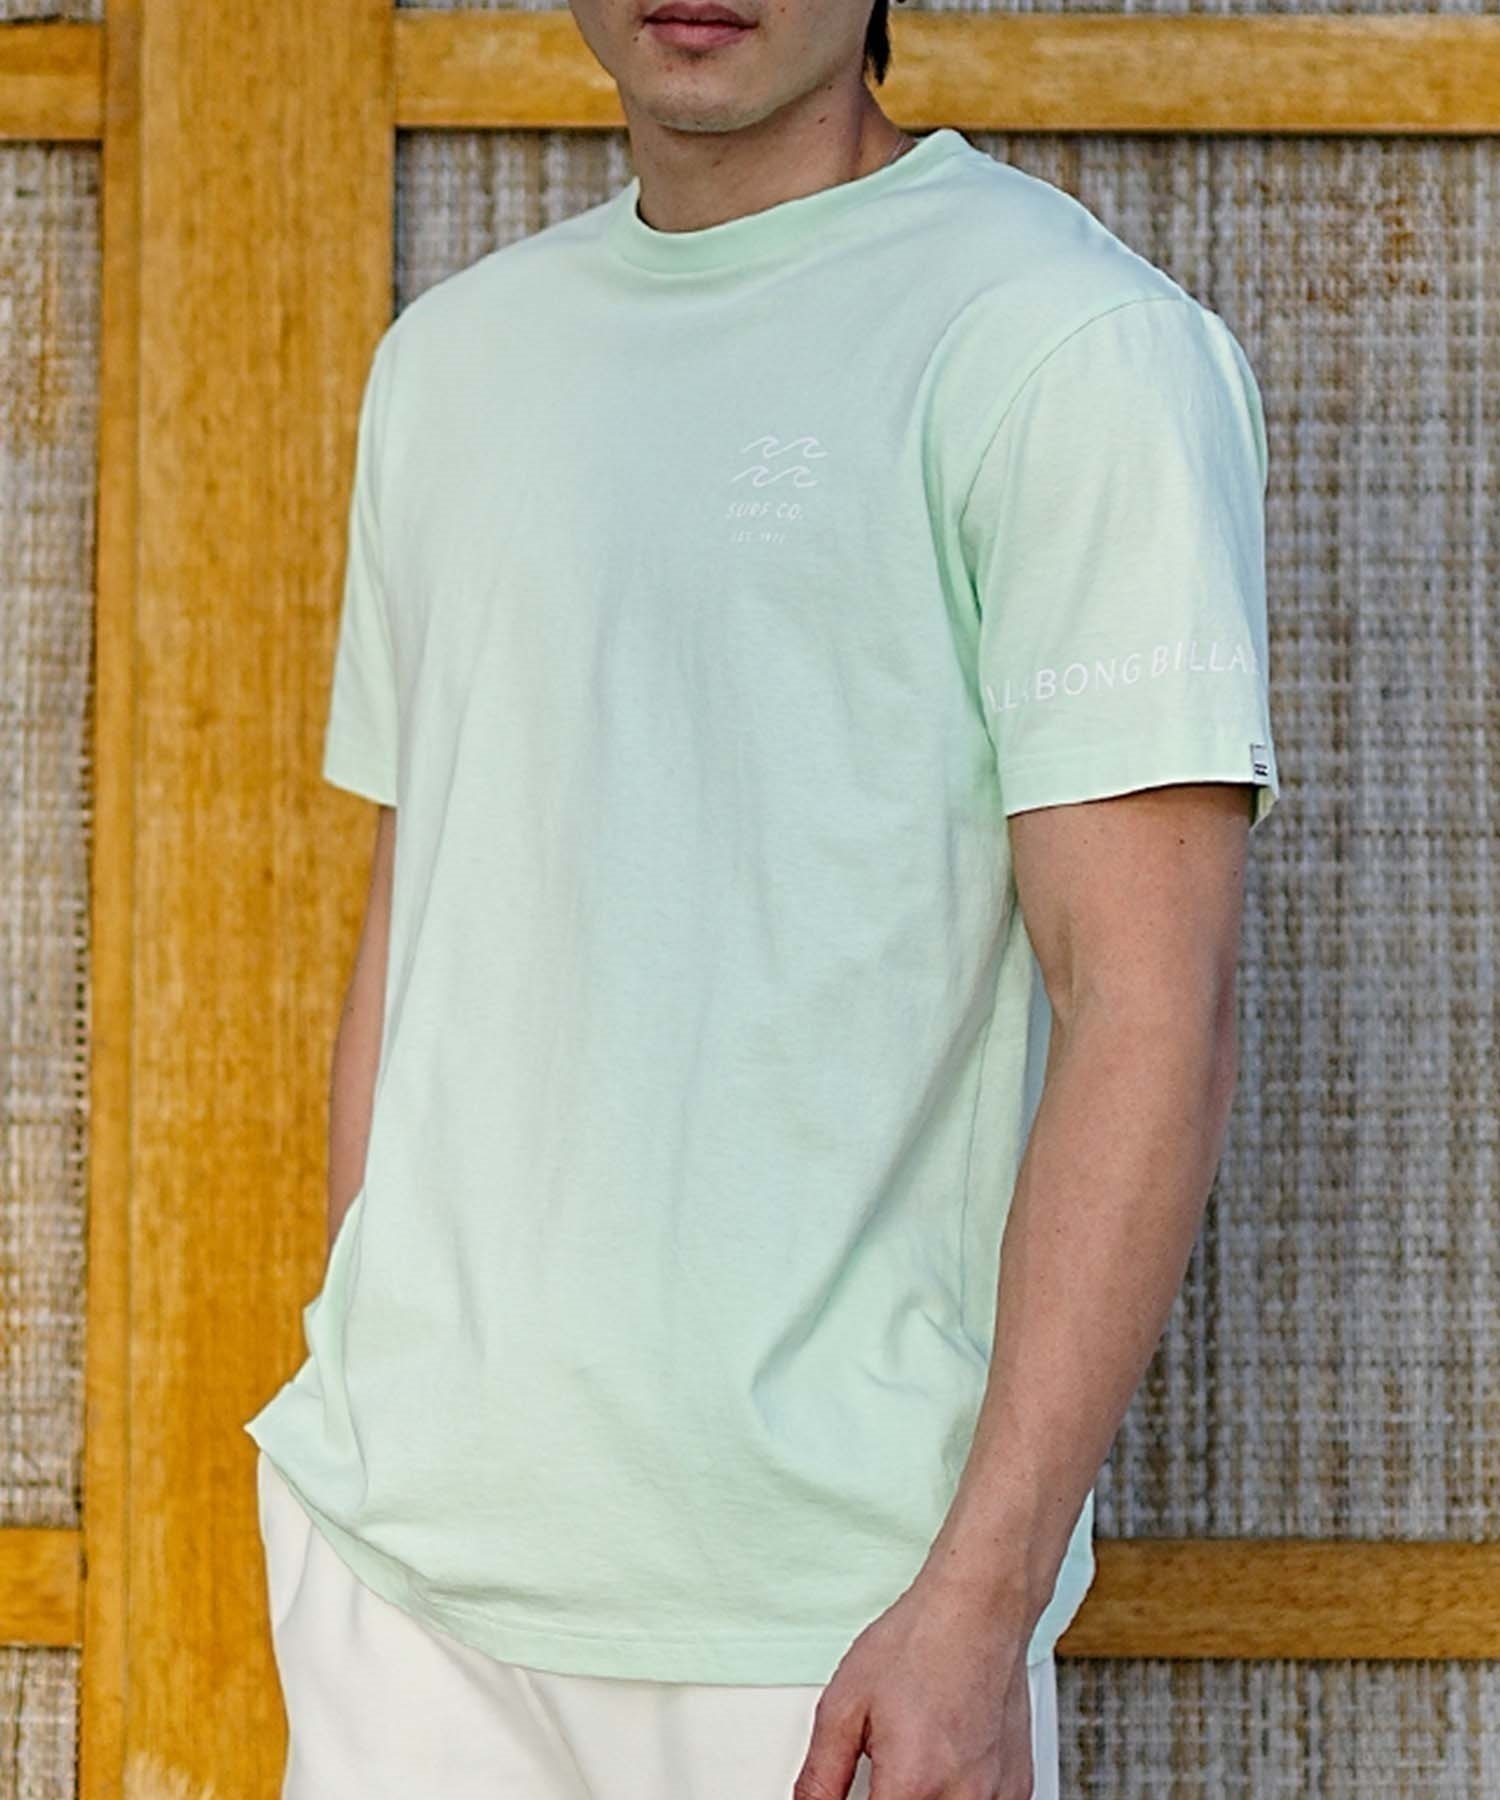 【マトメガイ対象】BILLABONG ビラボン メンズ バックプリントTシャツ ロゴT 半袖 BE011-204(WHT-S)